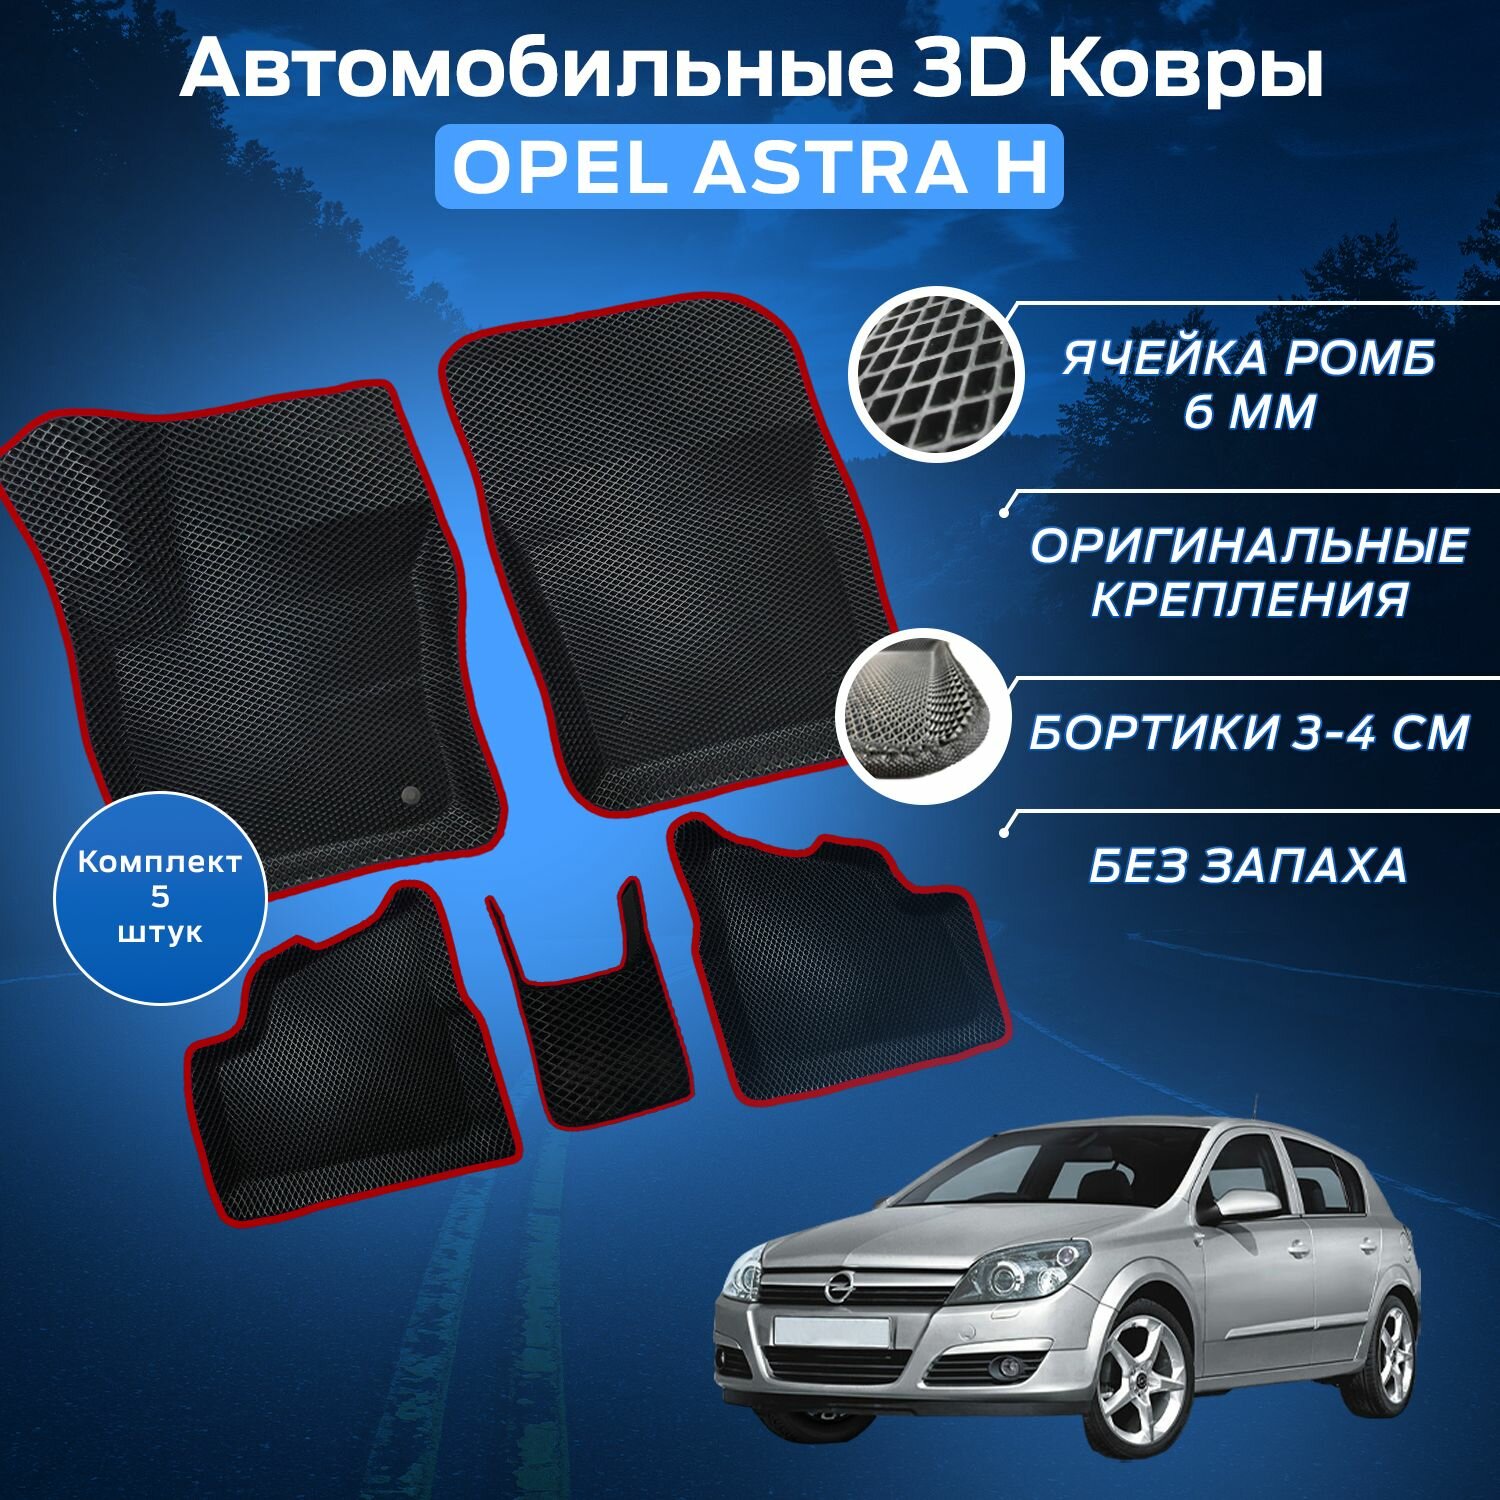 Пресс-EVA 3Д Ковры Опель Астра Н (Ева, эва, коврики с бортами) Opel Astra H / Красные